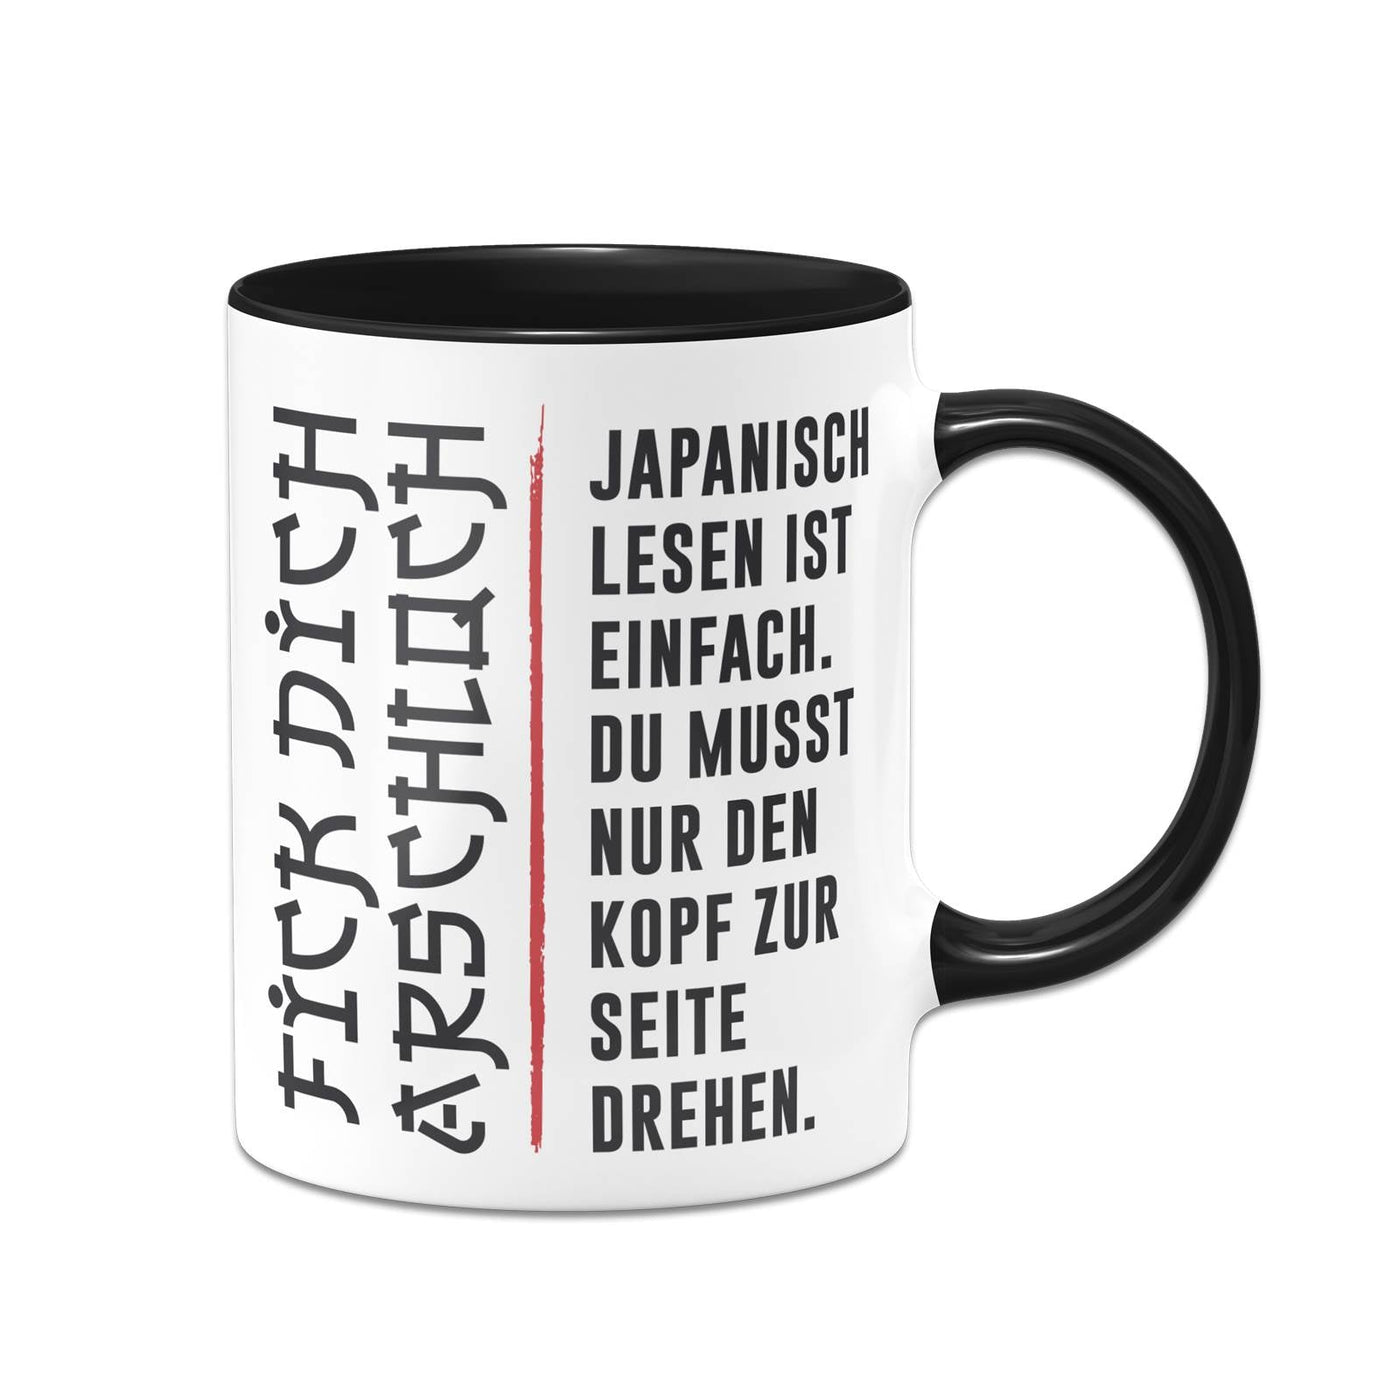 Bild: Tasse - Japanisch lesen ist einfach. Geschenkidee